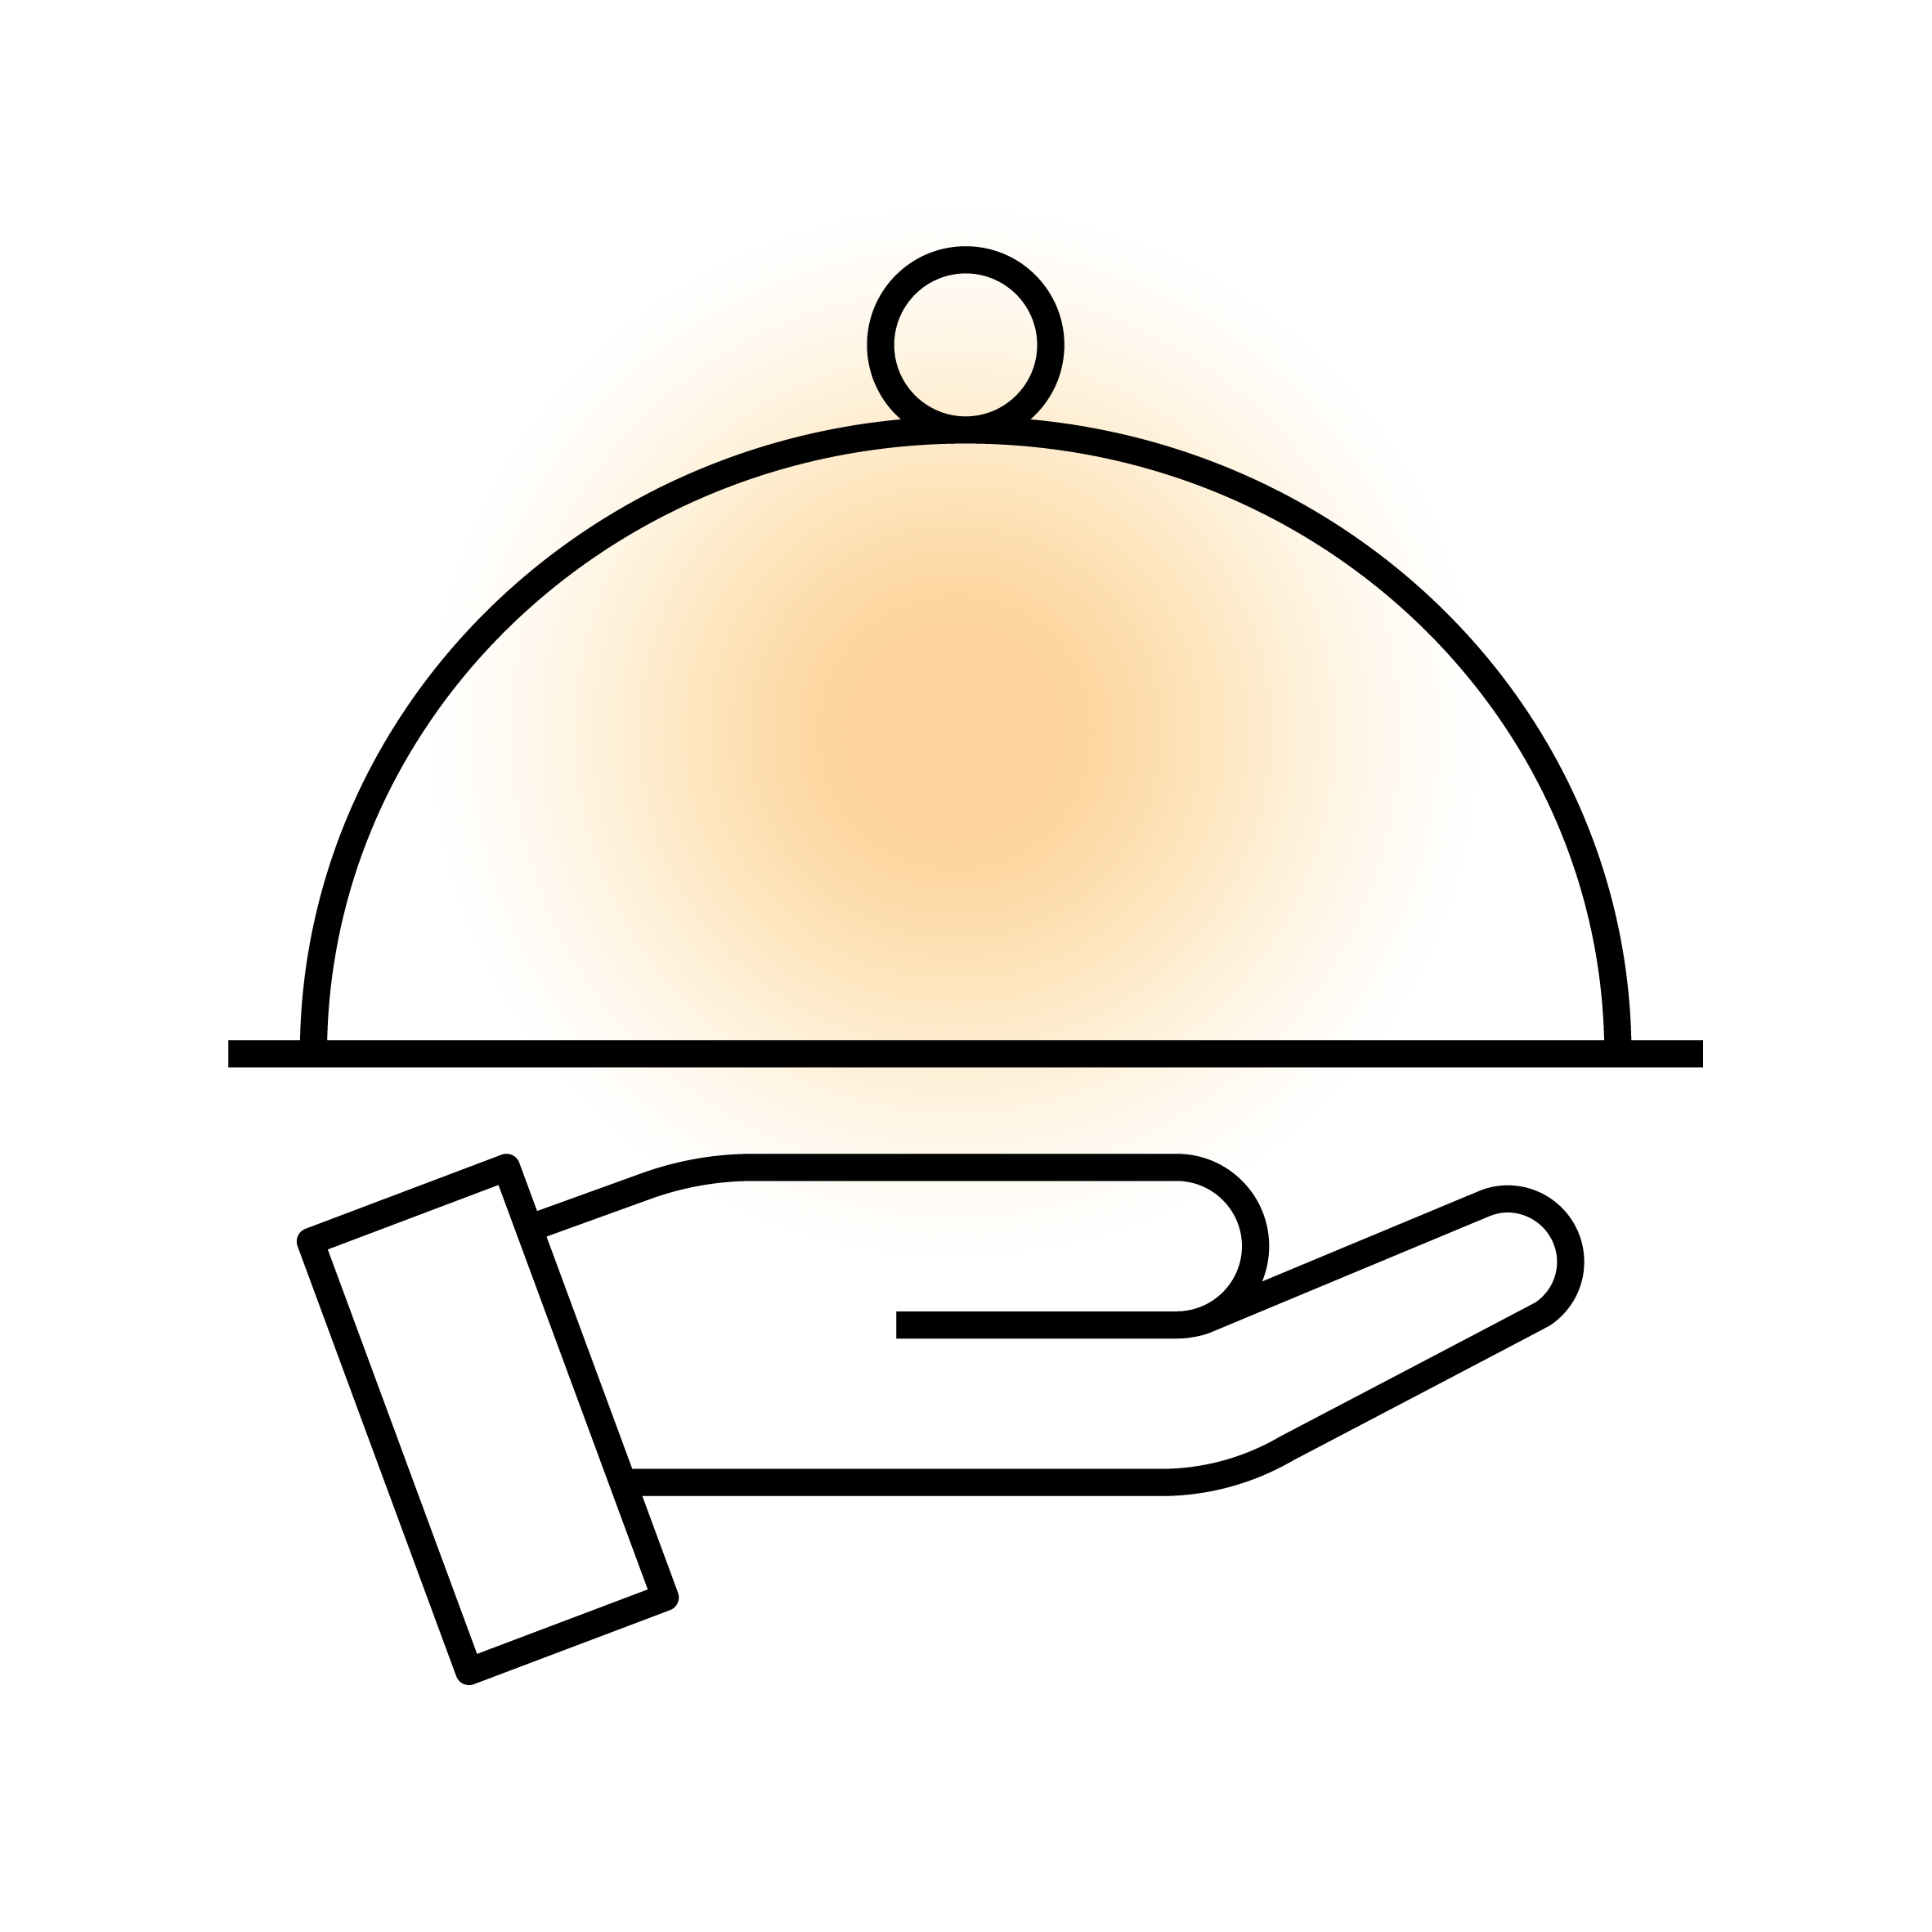 Servierglocke auf Handfläche, Symbol für Gastronomie und Service.